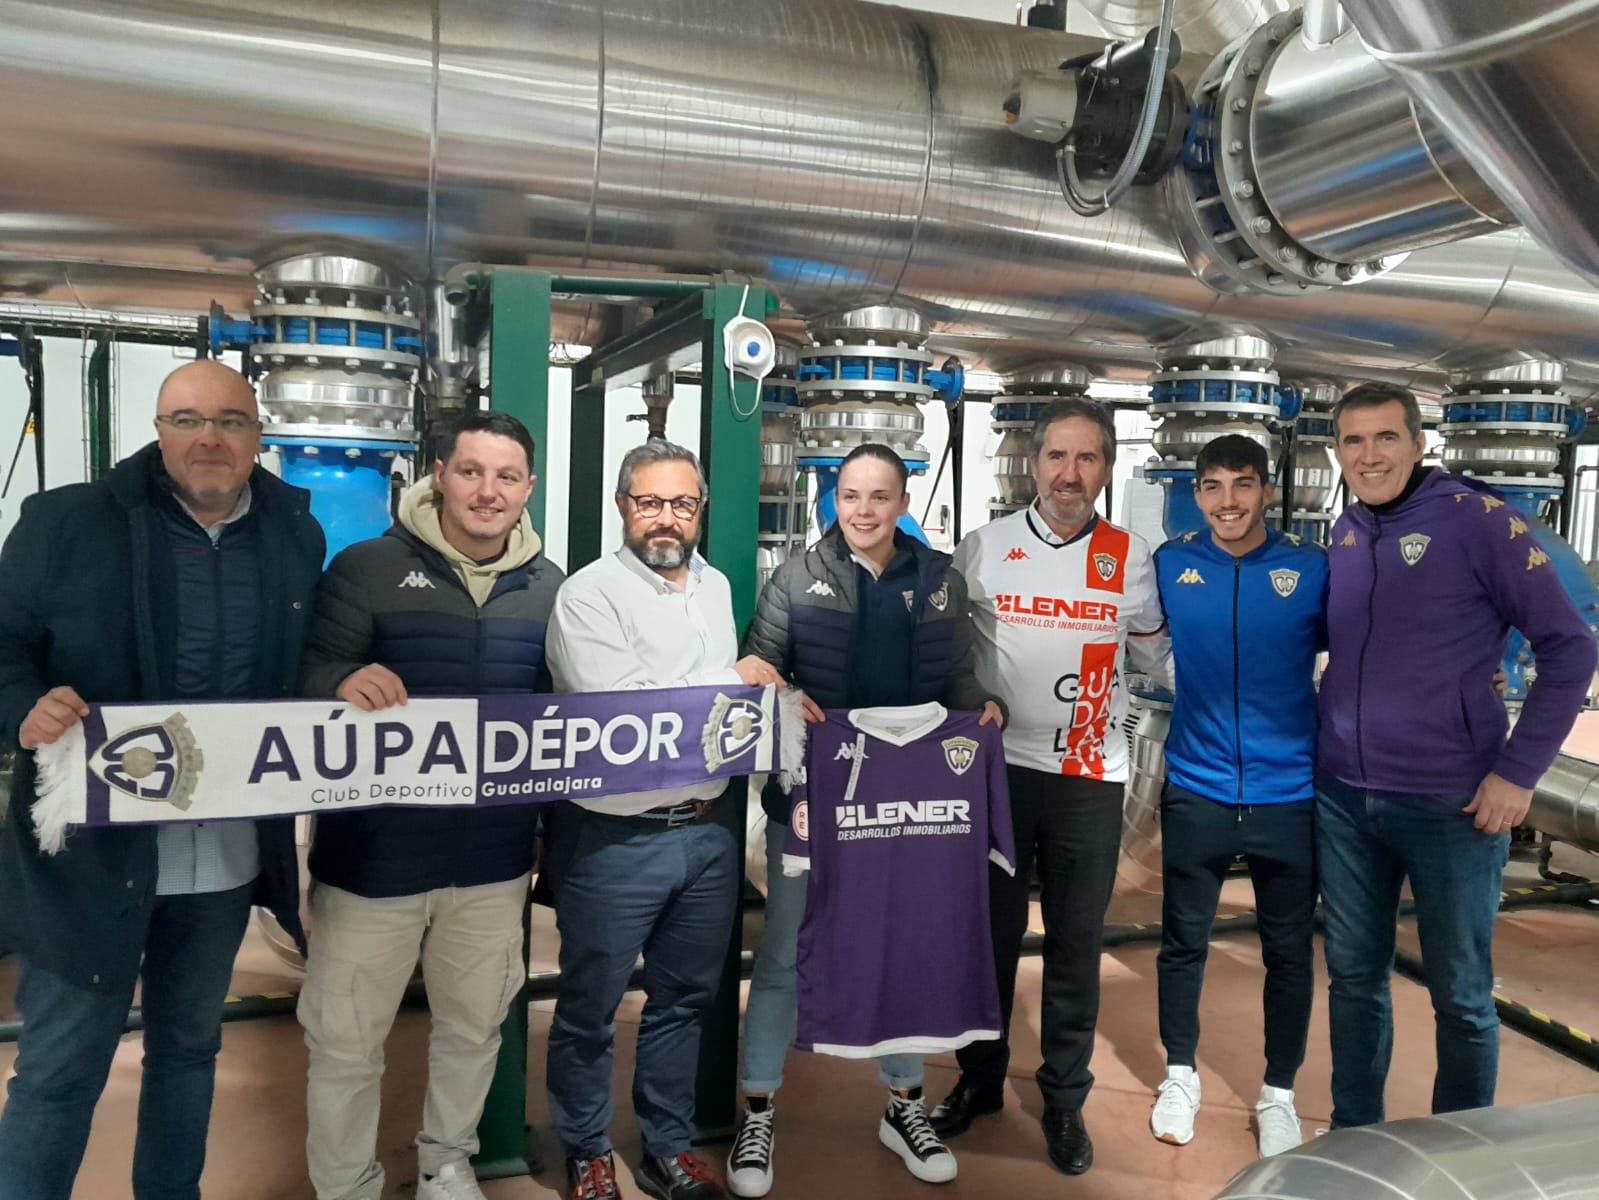 Red de Calor de Guadalajara patrocinará durante los próximos tres años al Club Deportivo Guadalajara